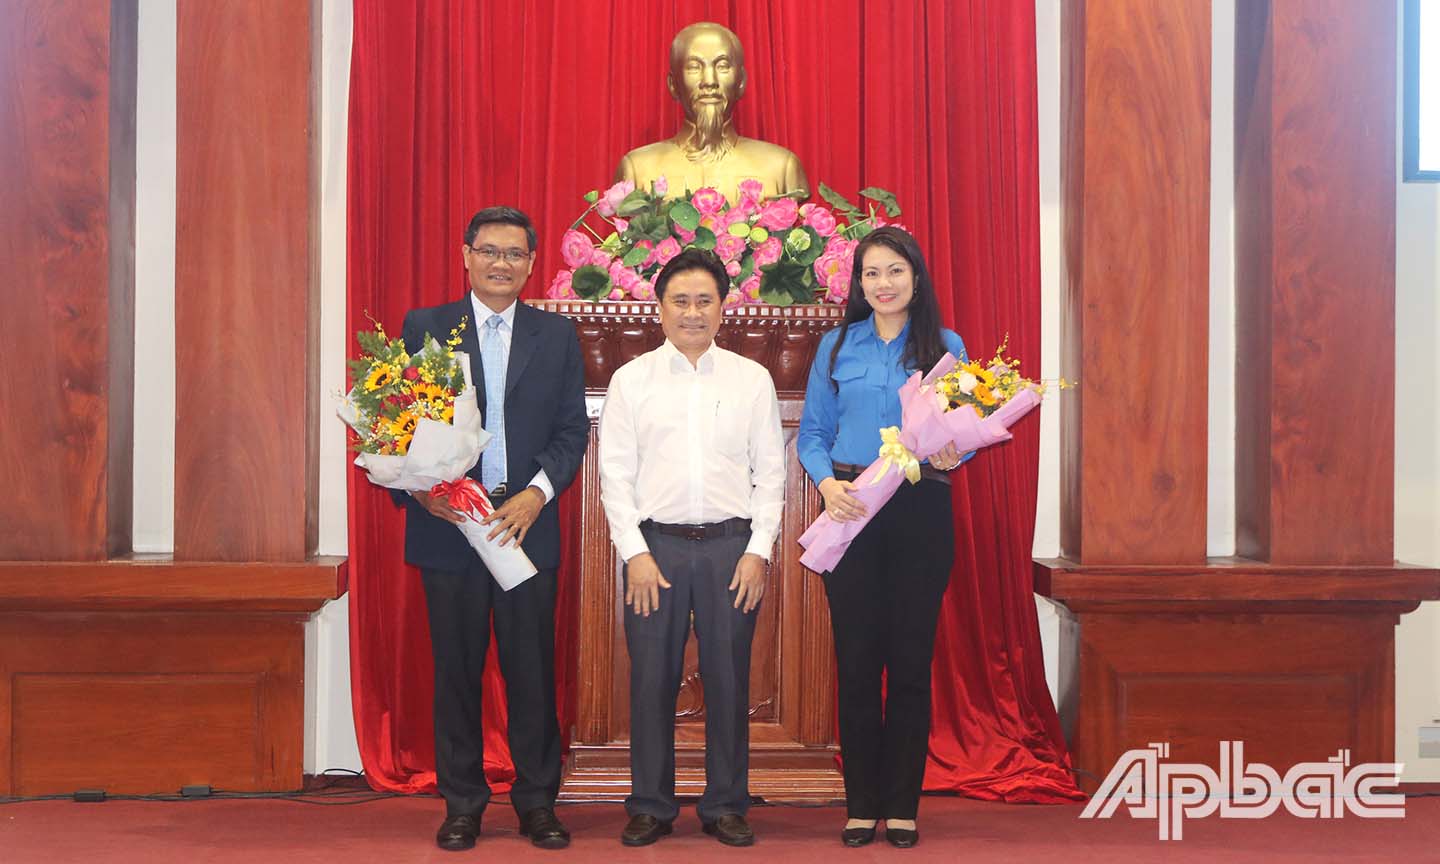 Đồng chí Trần Văn Dũng (giữa) tặng hoa cho lãnh đạo Trường Đại học mở TP. Hồ Chí Minh và Tỉnh đoàn.